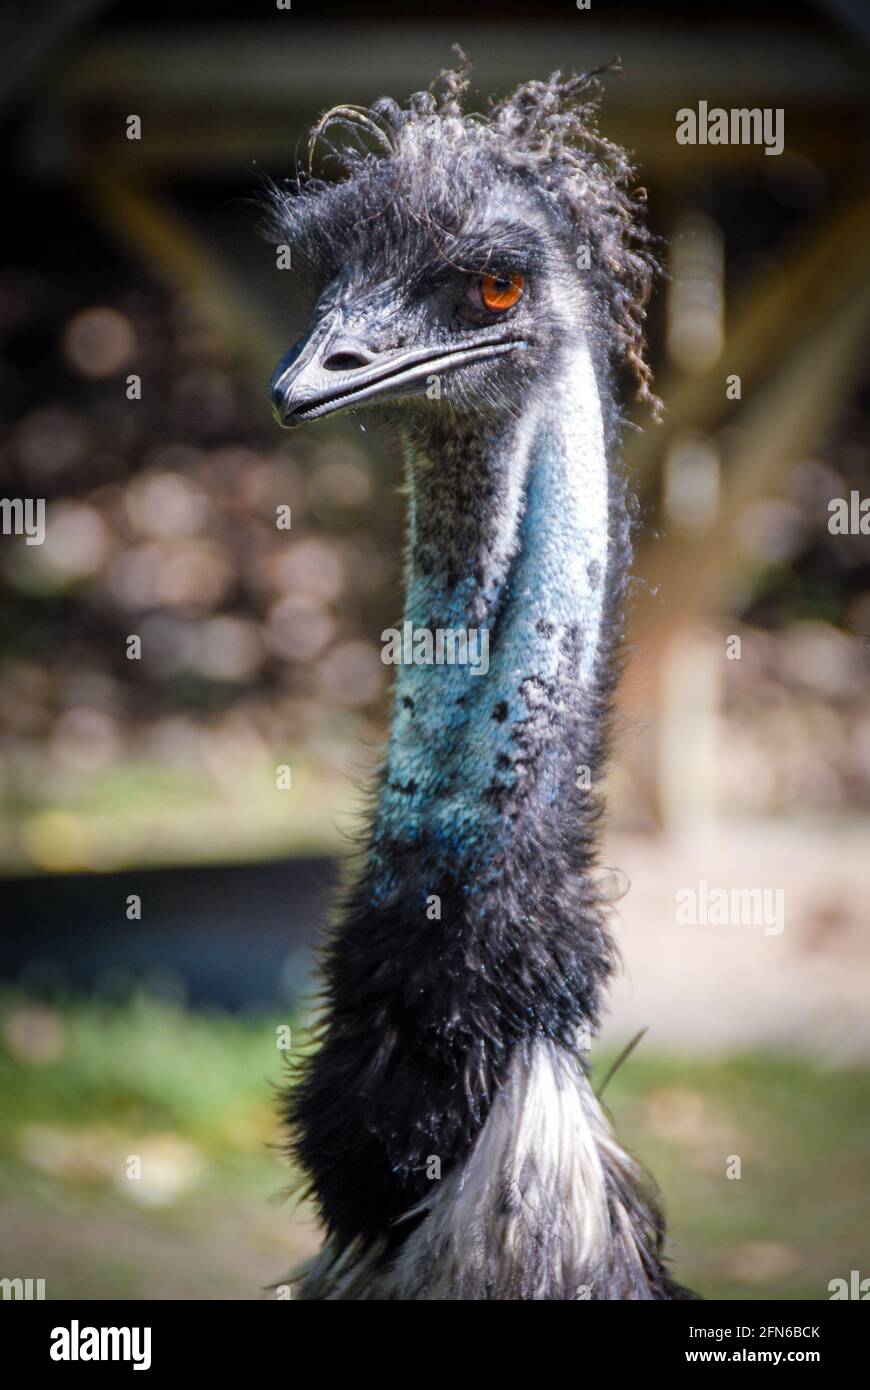 Ulkiger Vogel: Ein EMU im Zoo von Auckland starrt ziemlich verdrossen die Besucher an. Der flugunfähige Vogel ist in Australien heimisch und ein entfernter Verwandter der afrikanischen Strauße - Funny Bird: An emu ist gegenüber Besuchern eher hinterlistig. Der in Australien heimische, flugunfreie Vogel ist ein entfernter Verwandter des afrikanischen Straußes. Stockfoto